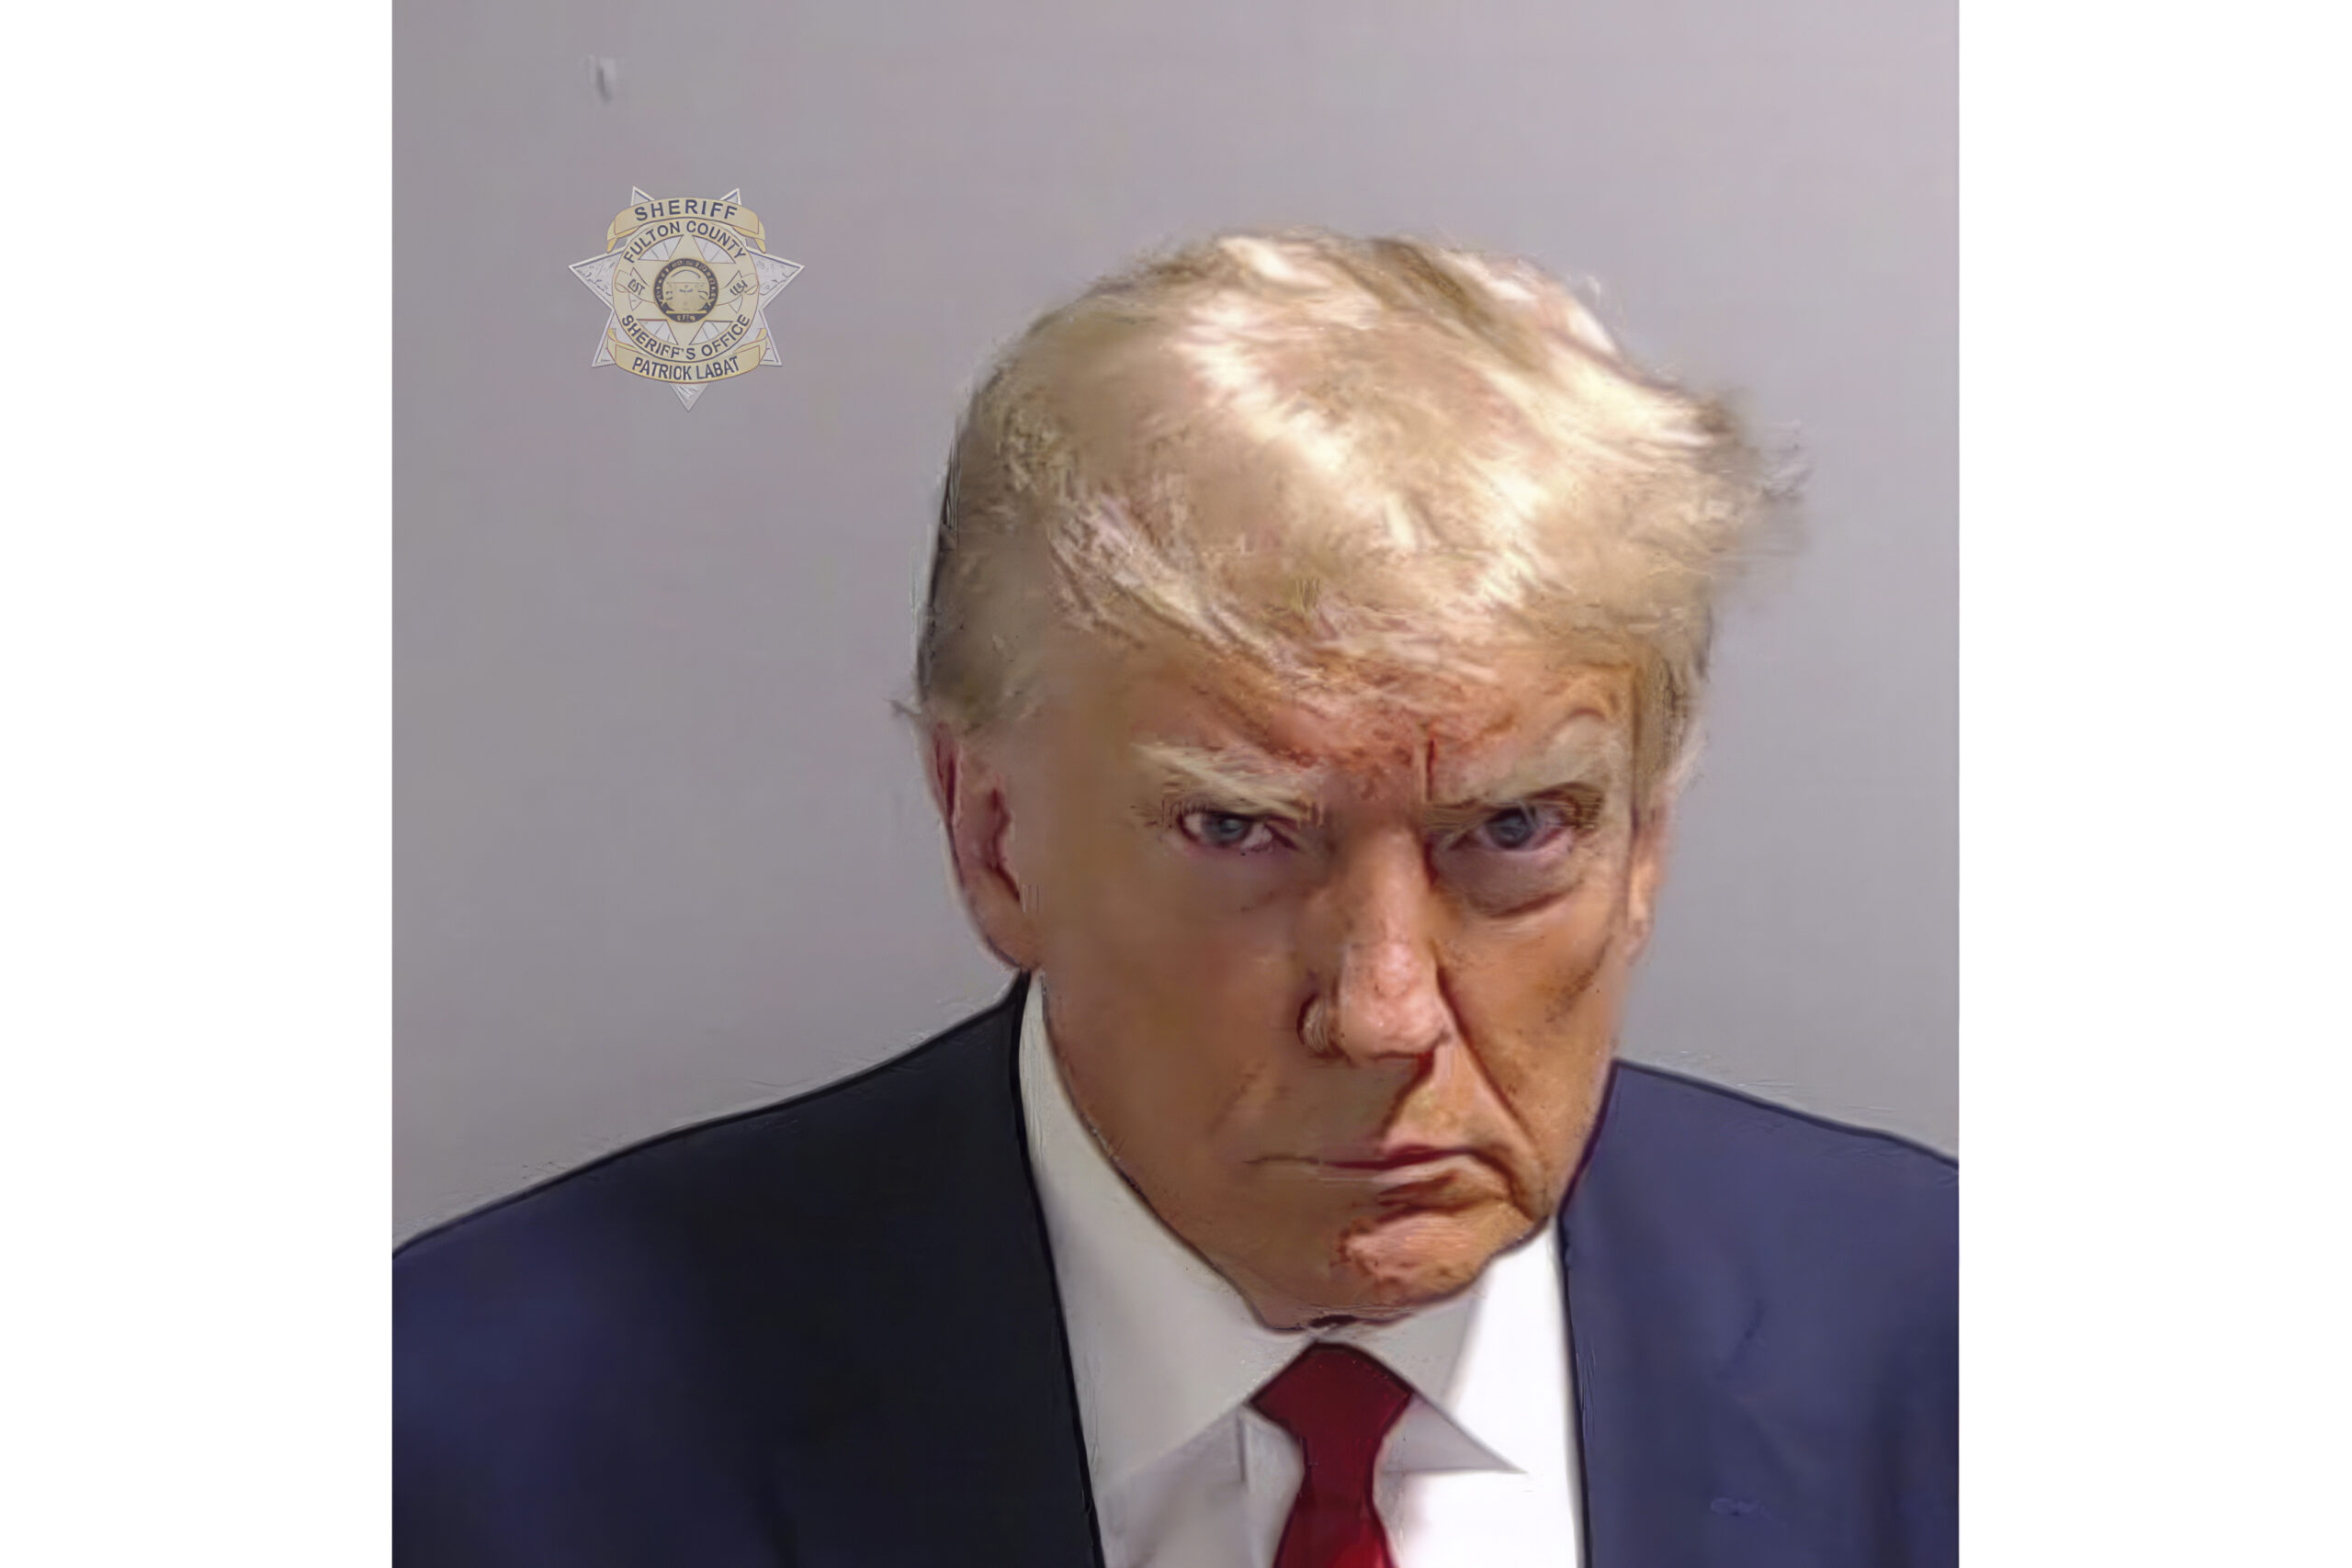 Schaut ganz schön grimmig in die Kamera: Ex-Präsident Donald Trump und das offizielle Polizei-Foto